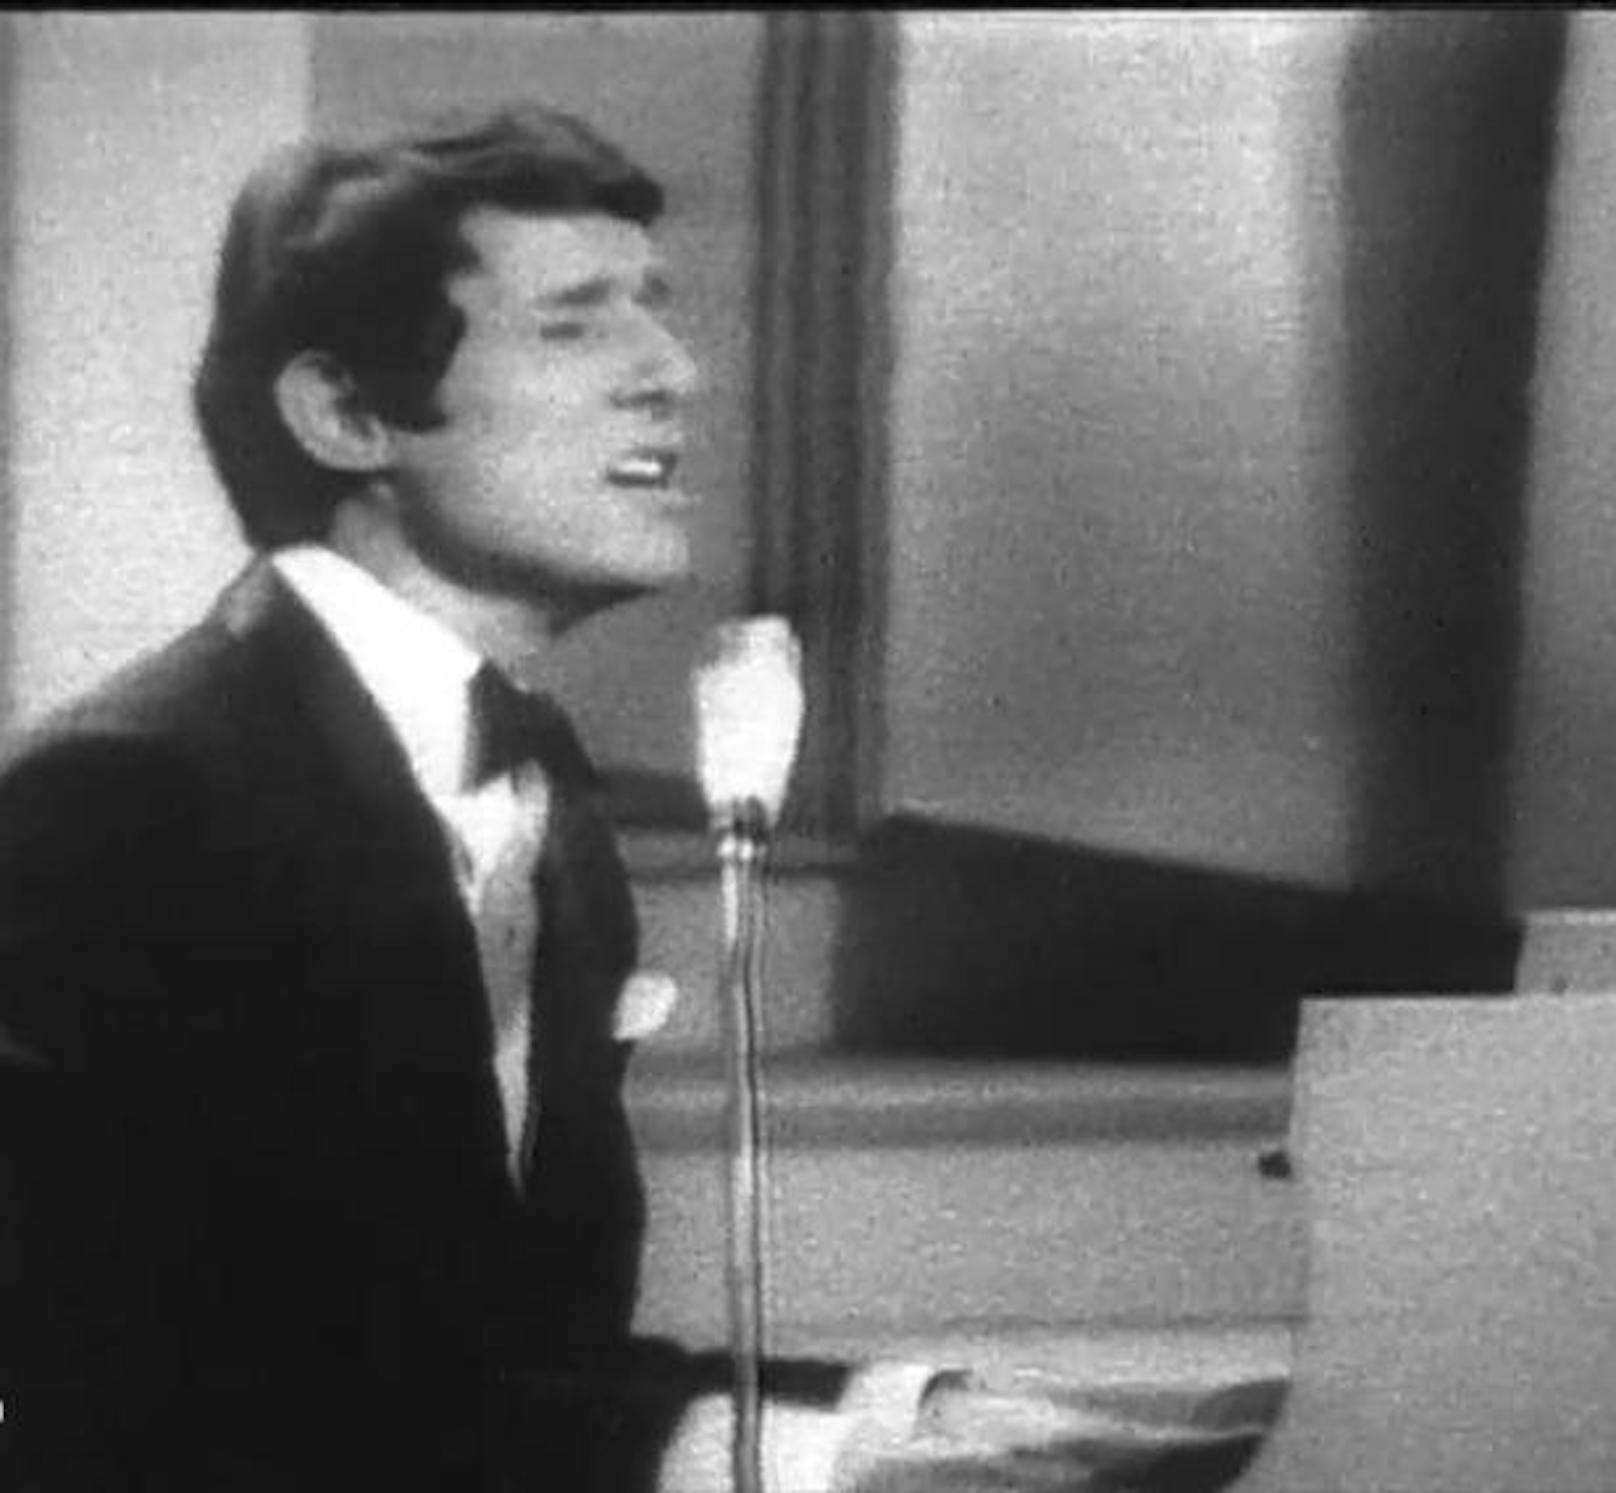 Ausschnitt aus dem Song Contest 1976: Udo Jürgens mit seinem Siegeslied "Mercie, Chérie"